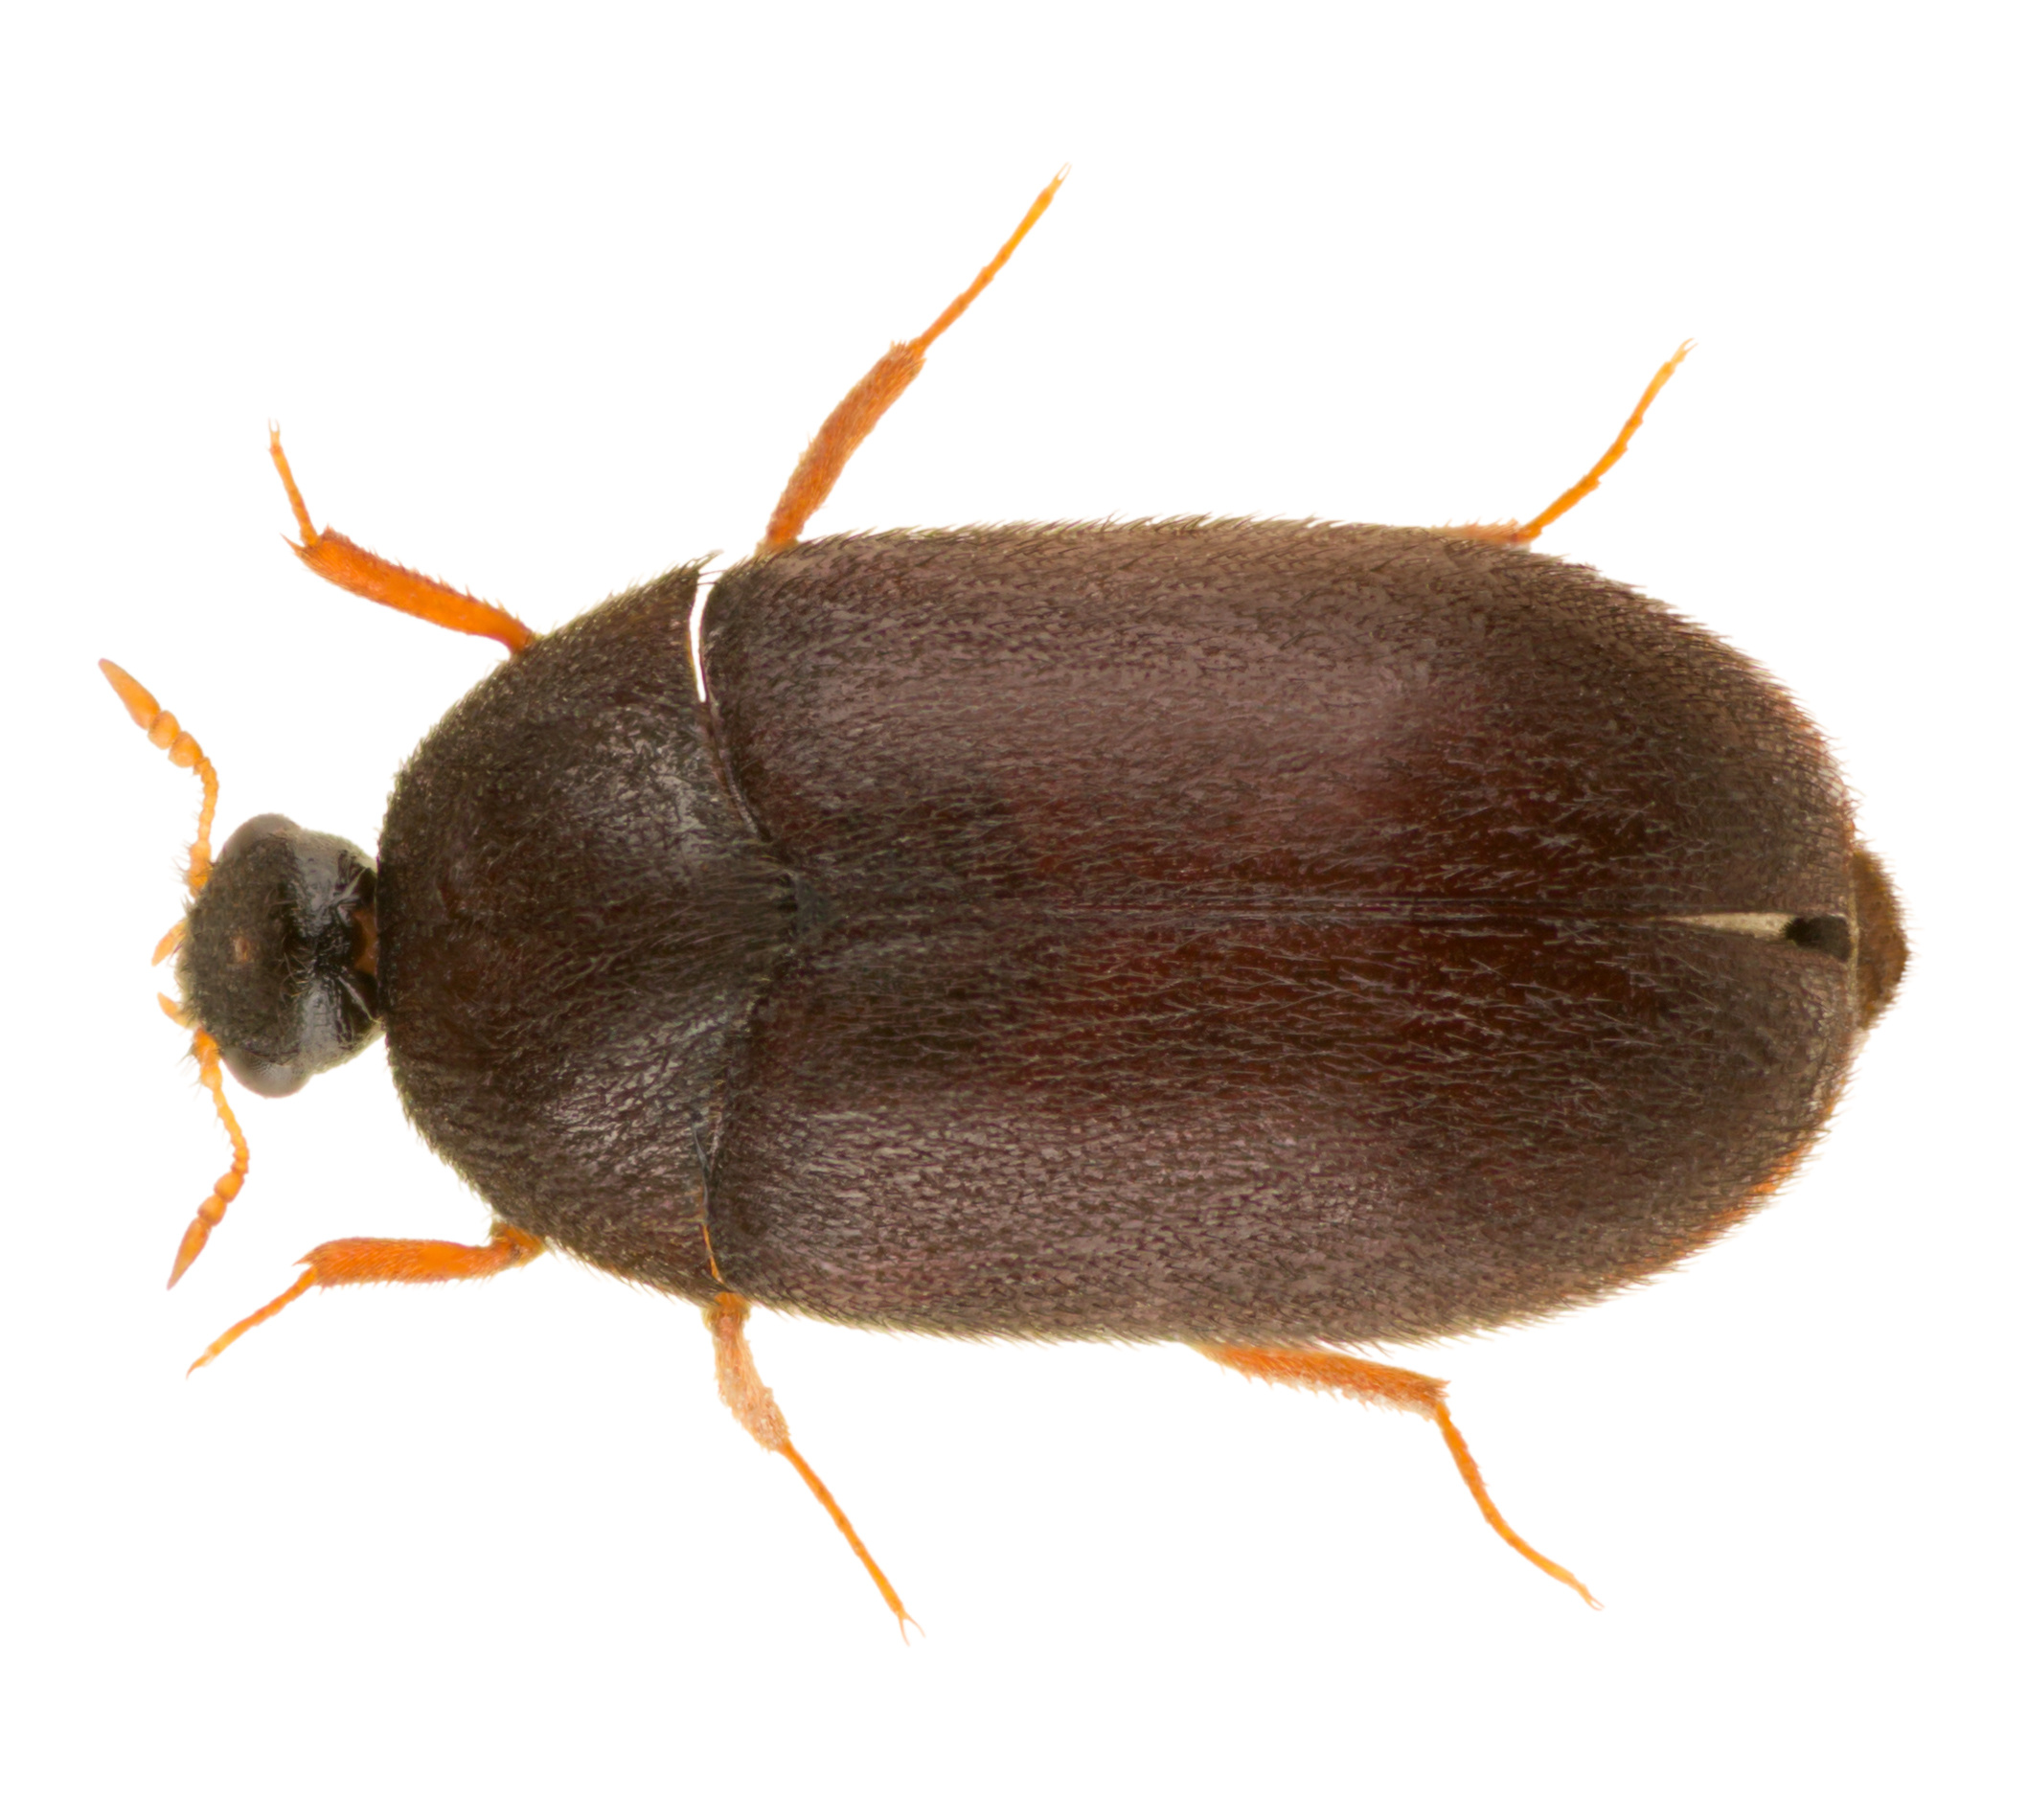 dermestid beetles